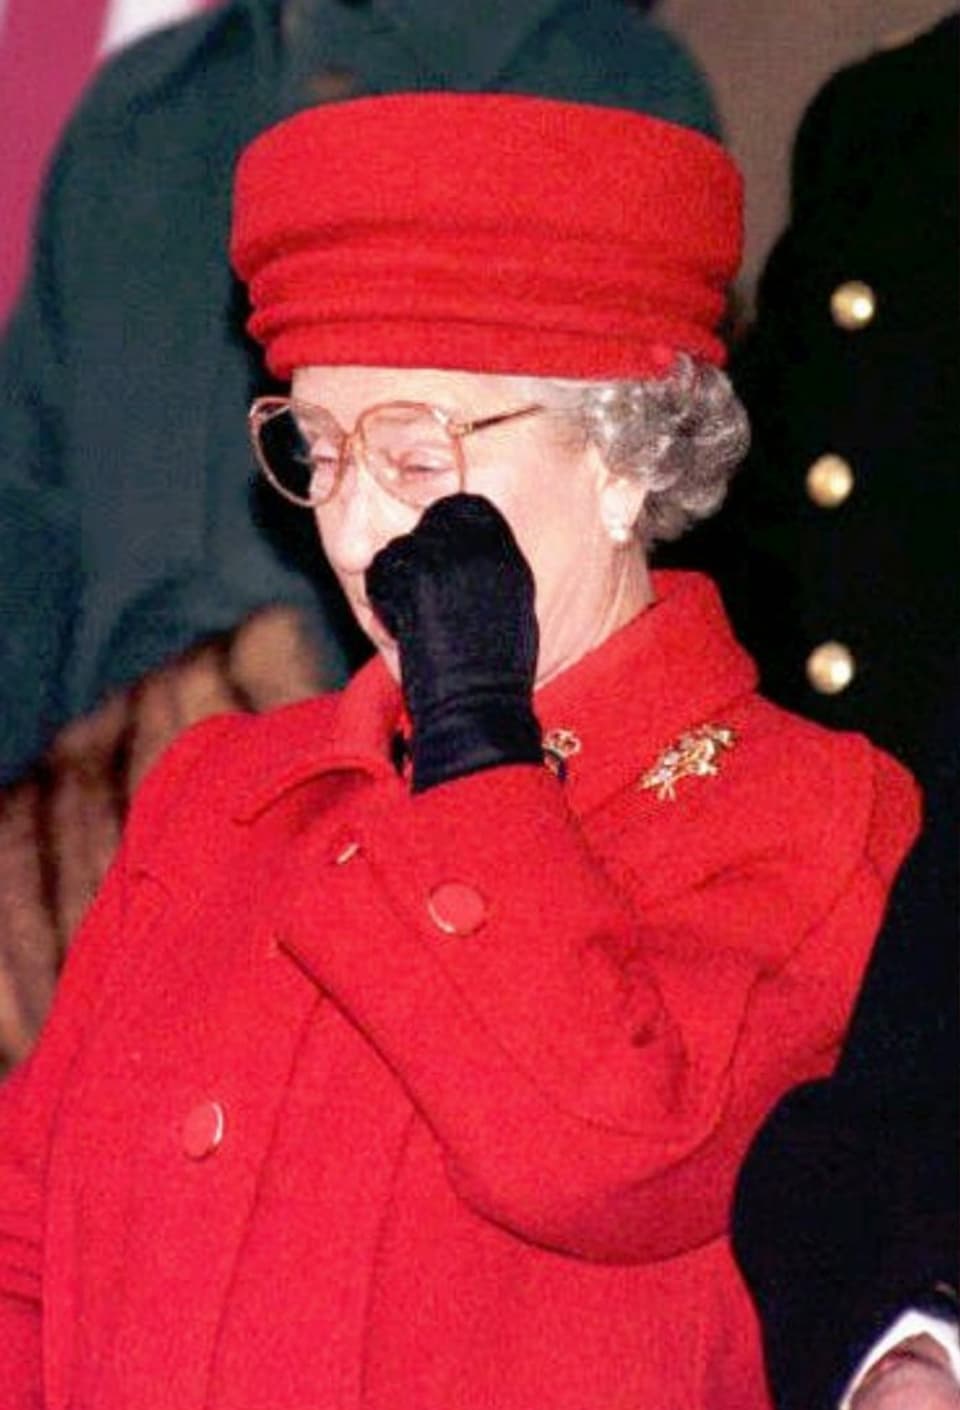 In rar maletg: La Queen che fruscha davent in larmin. Quai cura ch’ella ha stuì dar adia a ses bastiment “Britannia” il 1997.